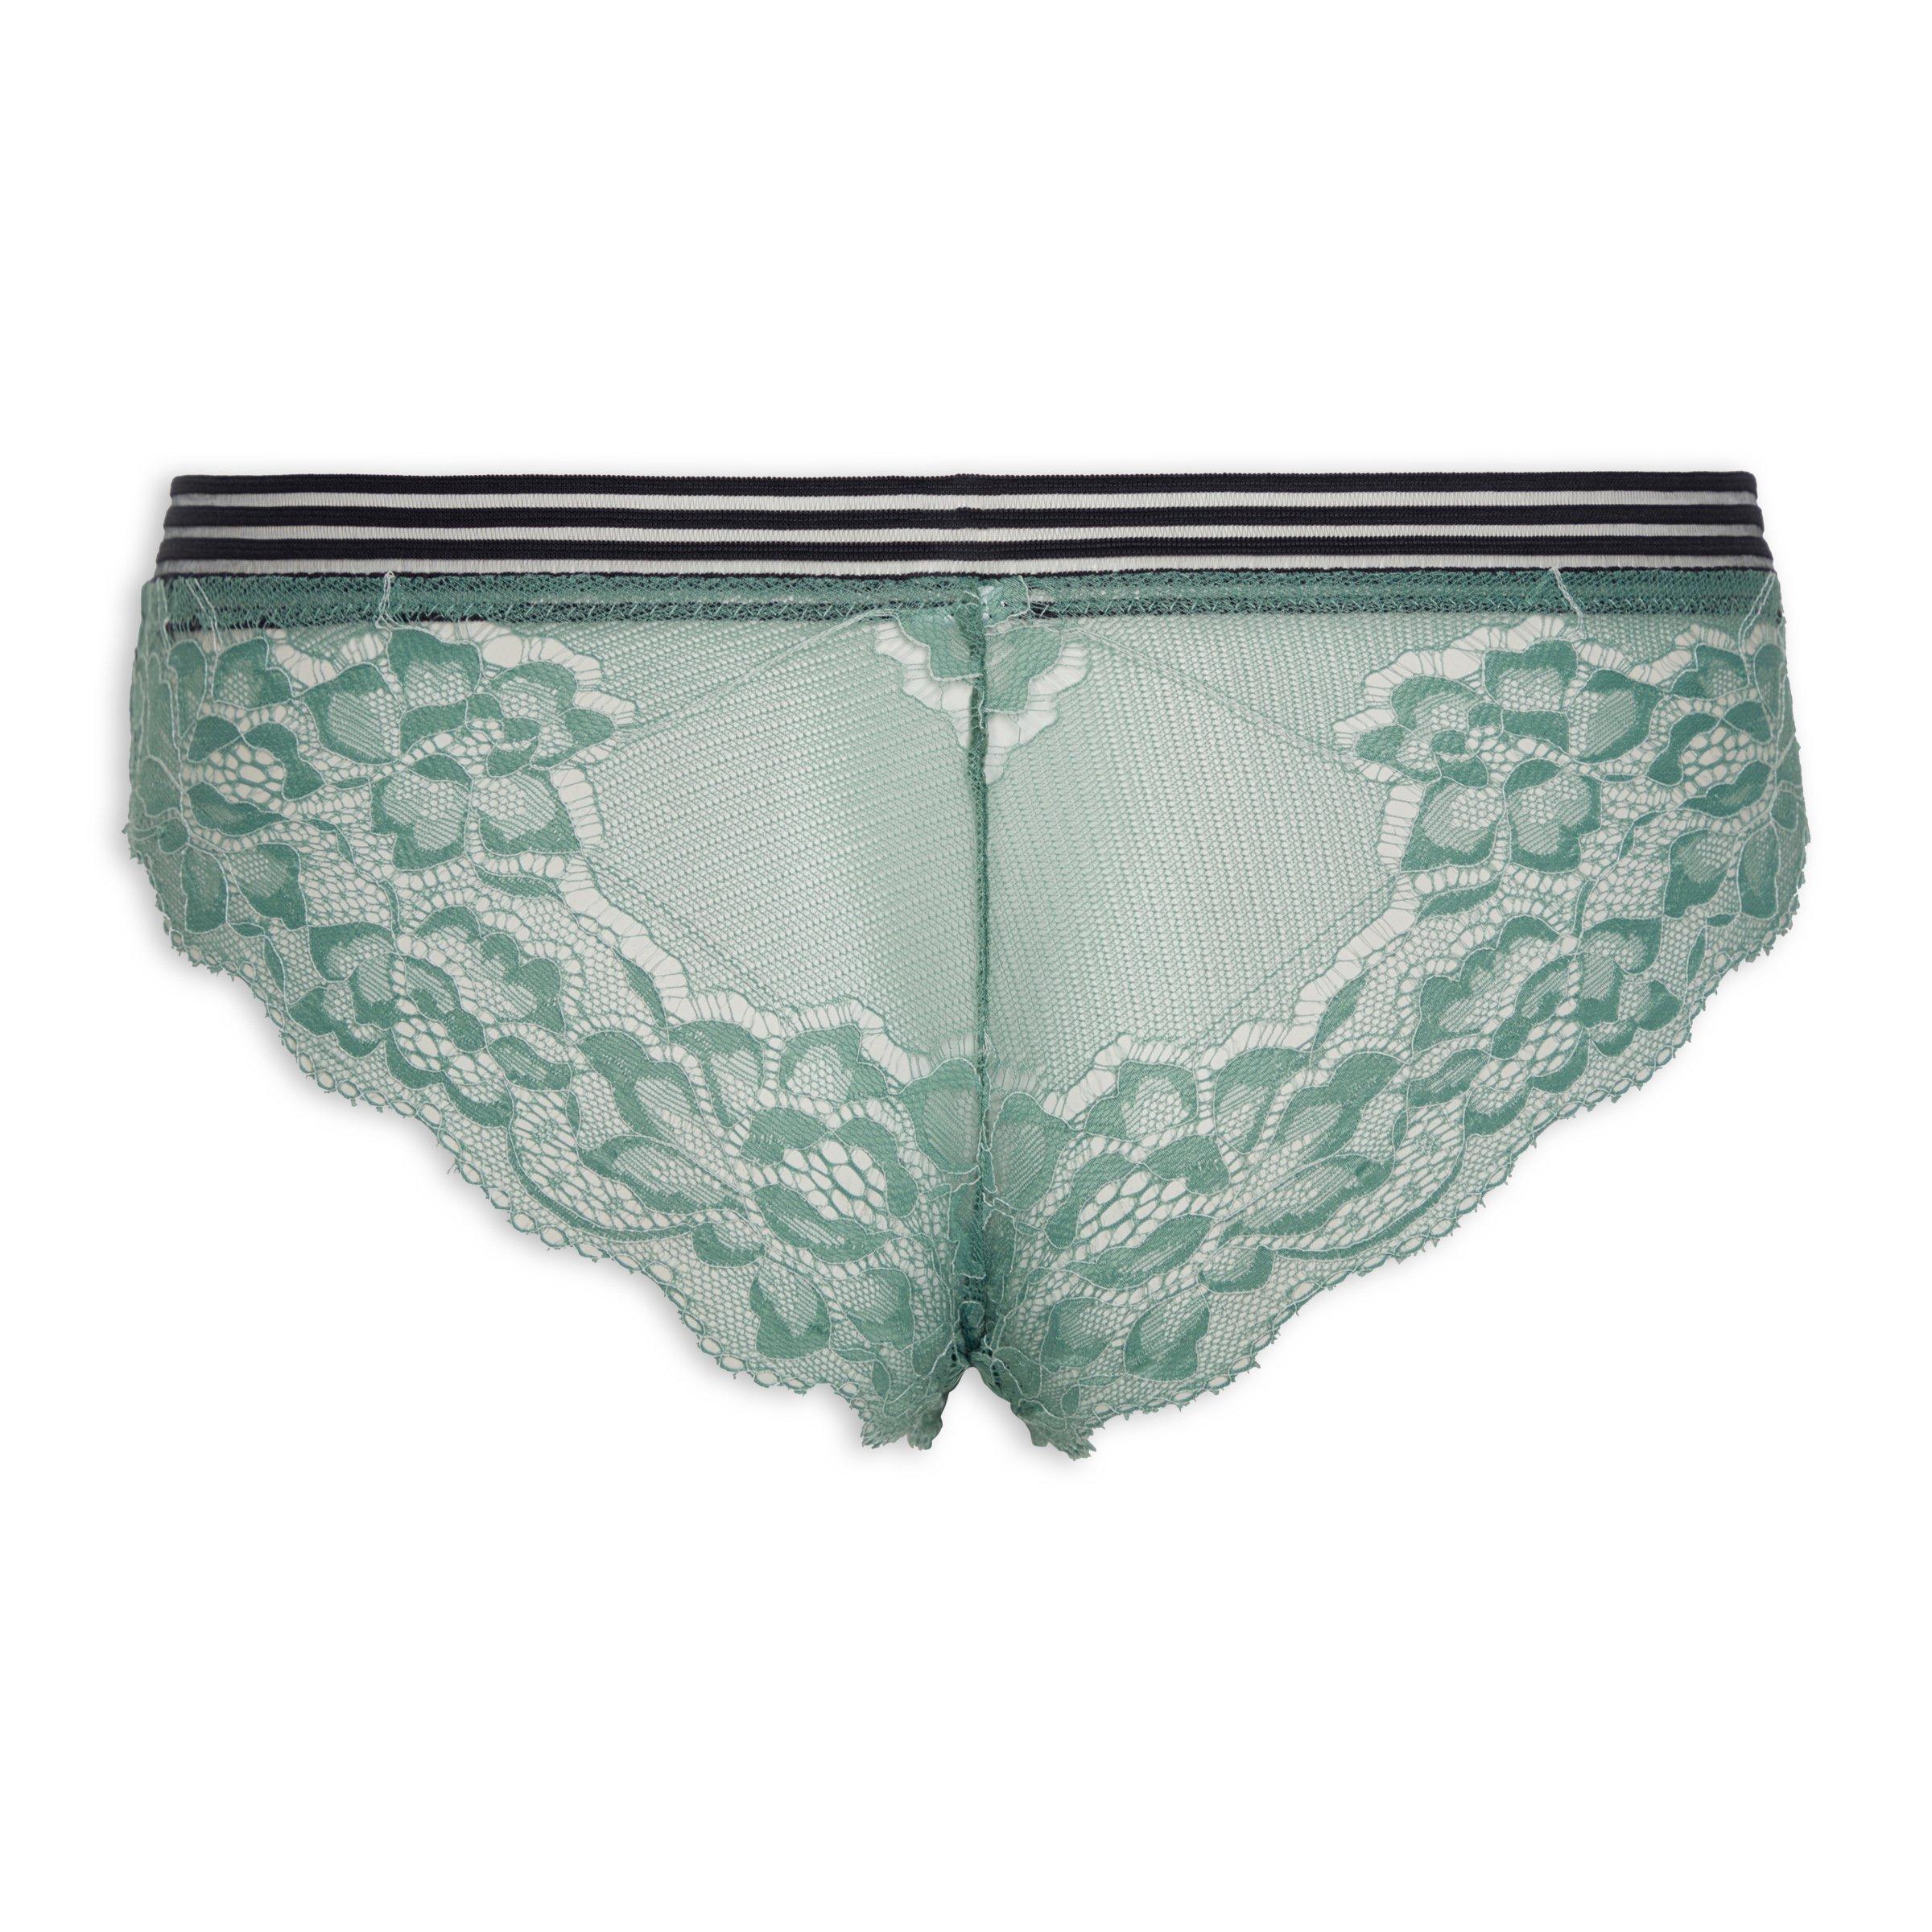 Brazilian underwear in lace - Light Green